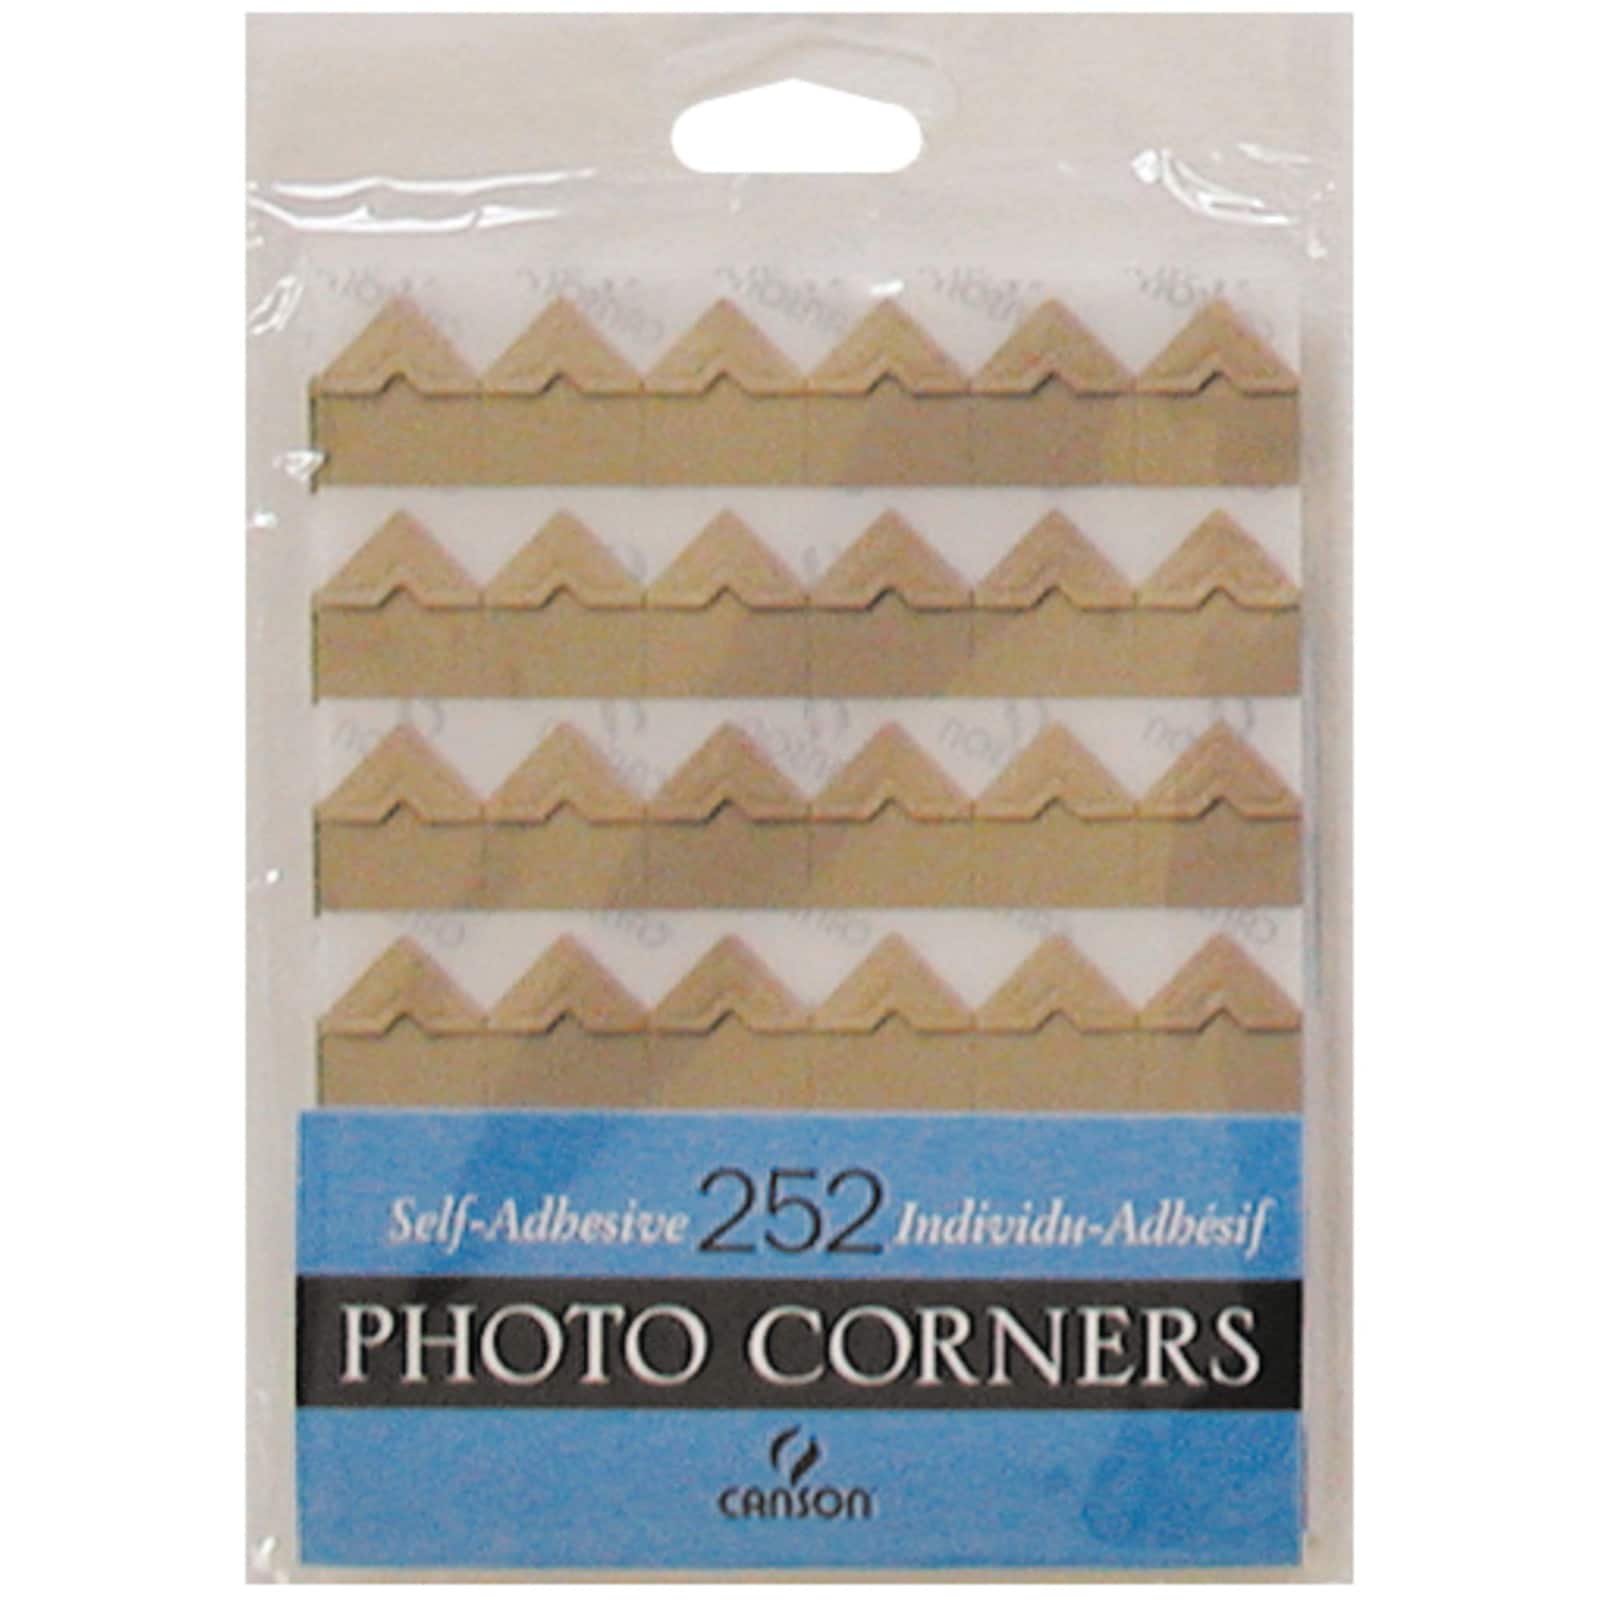 PHOTO CORNERS - 108 SELF-ADHESIVE PAPER CORNERS Kolo